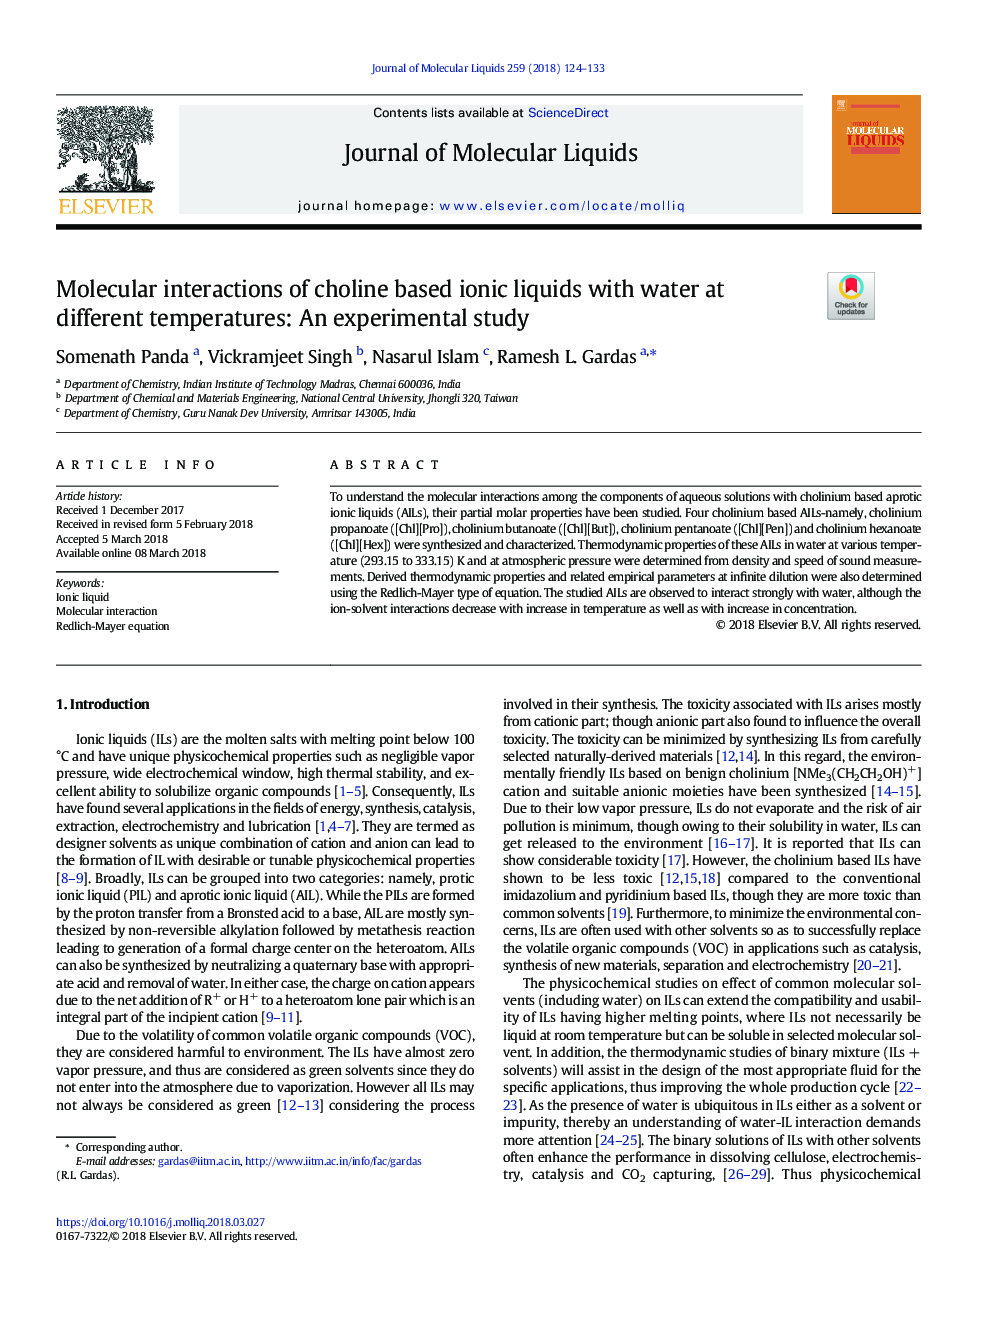 تعاملات مولکولی مایعات یونی مبتنی بر کولین با آب در دماهای مختلف: یک مطالعه تجربی 